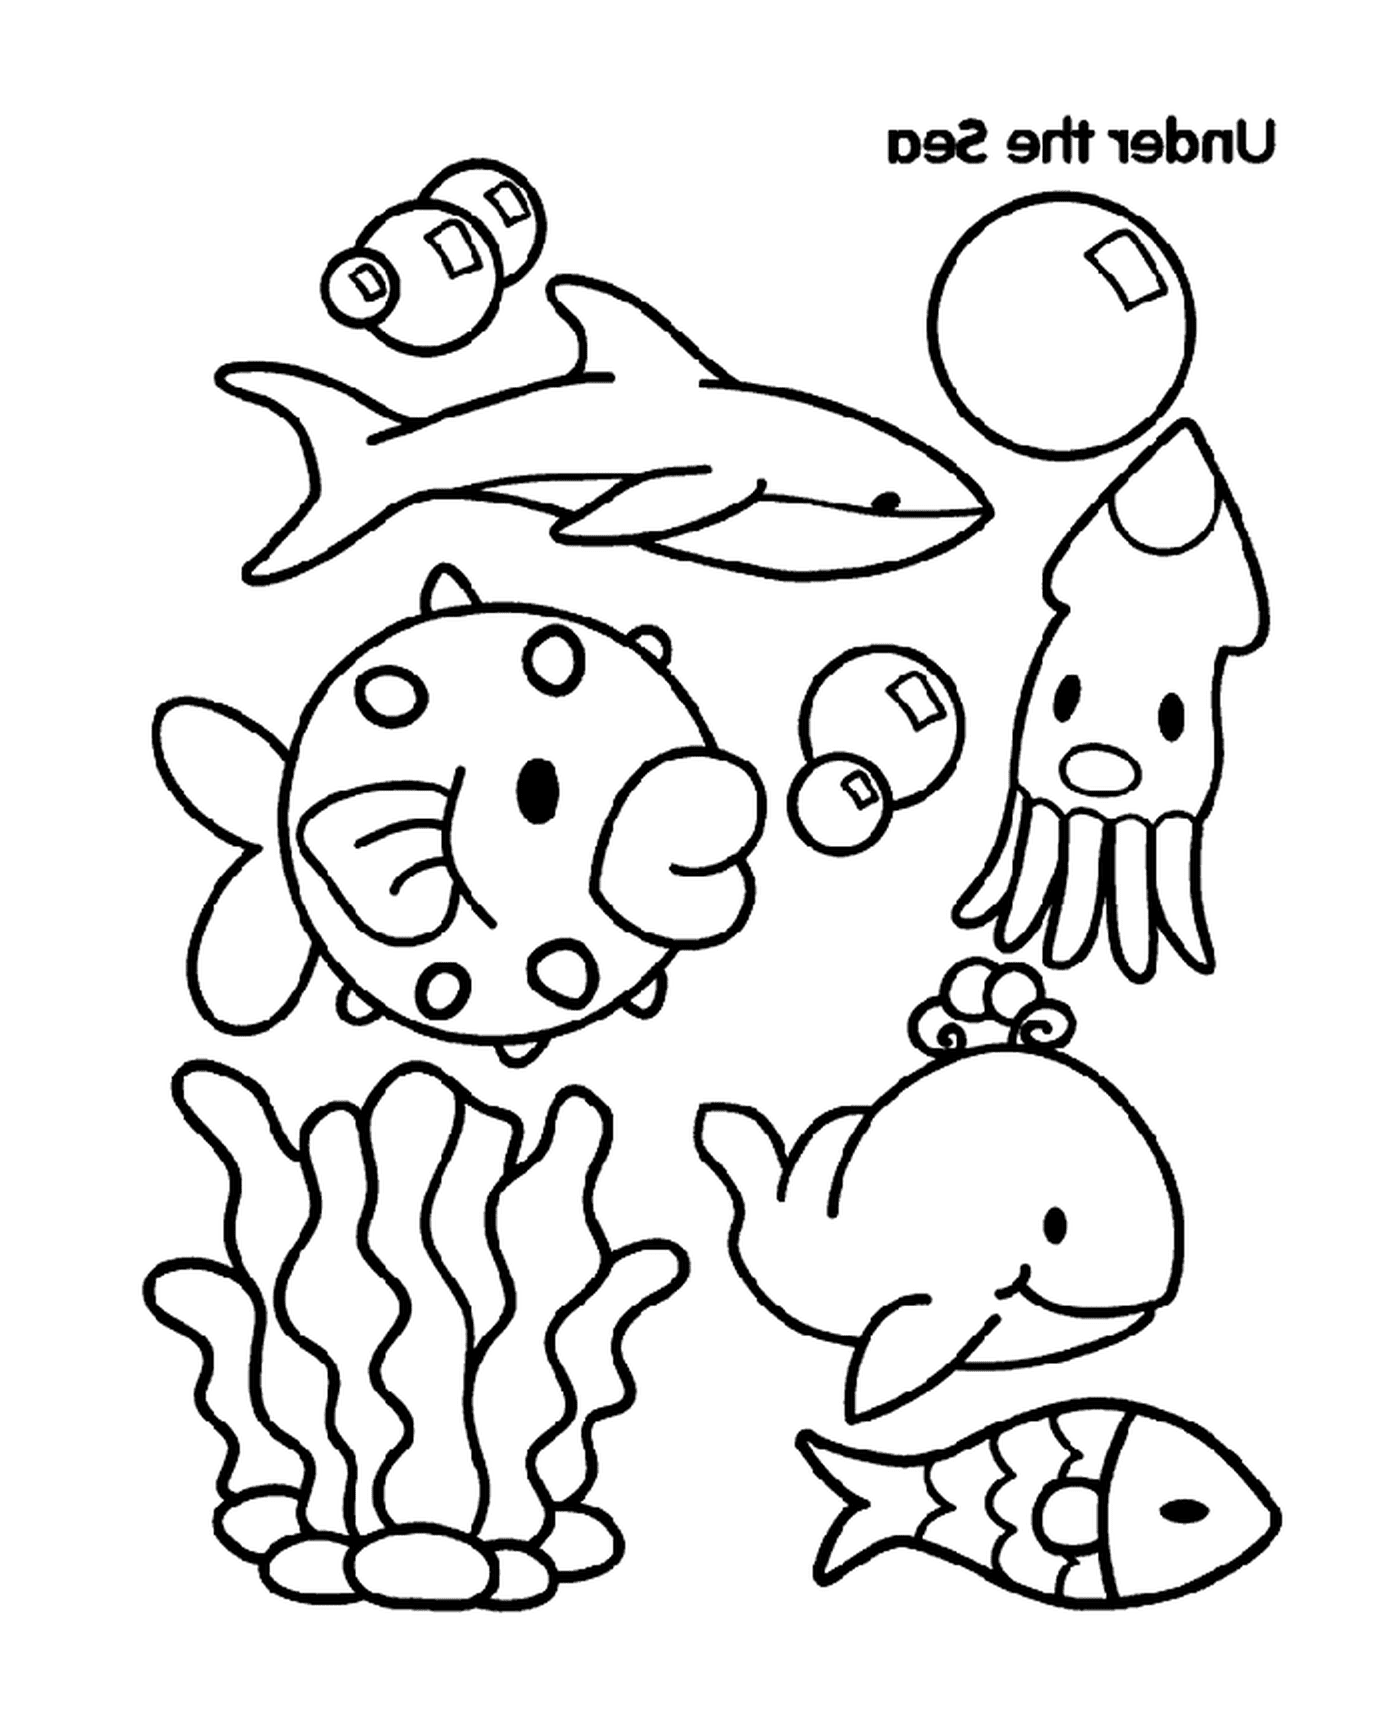   Un groupe d'animaux marins 